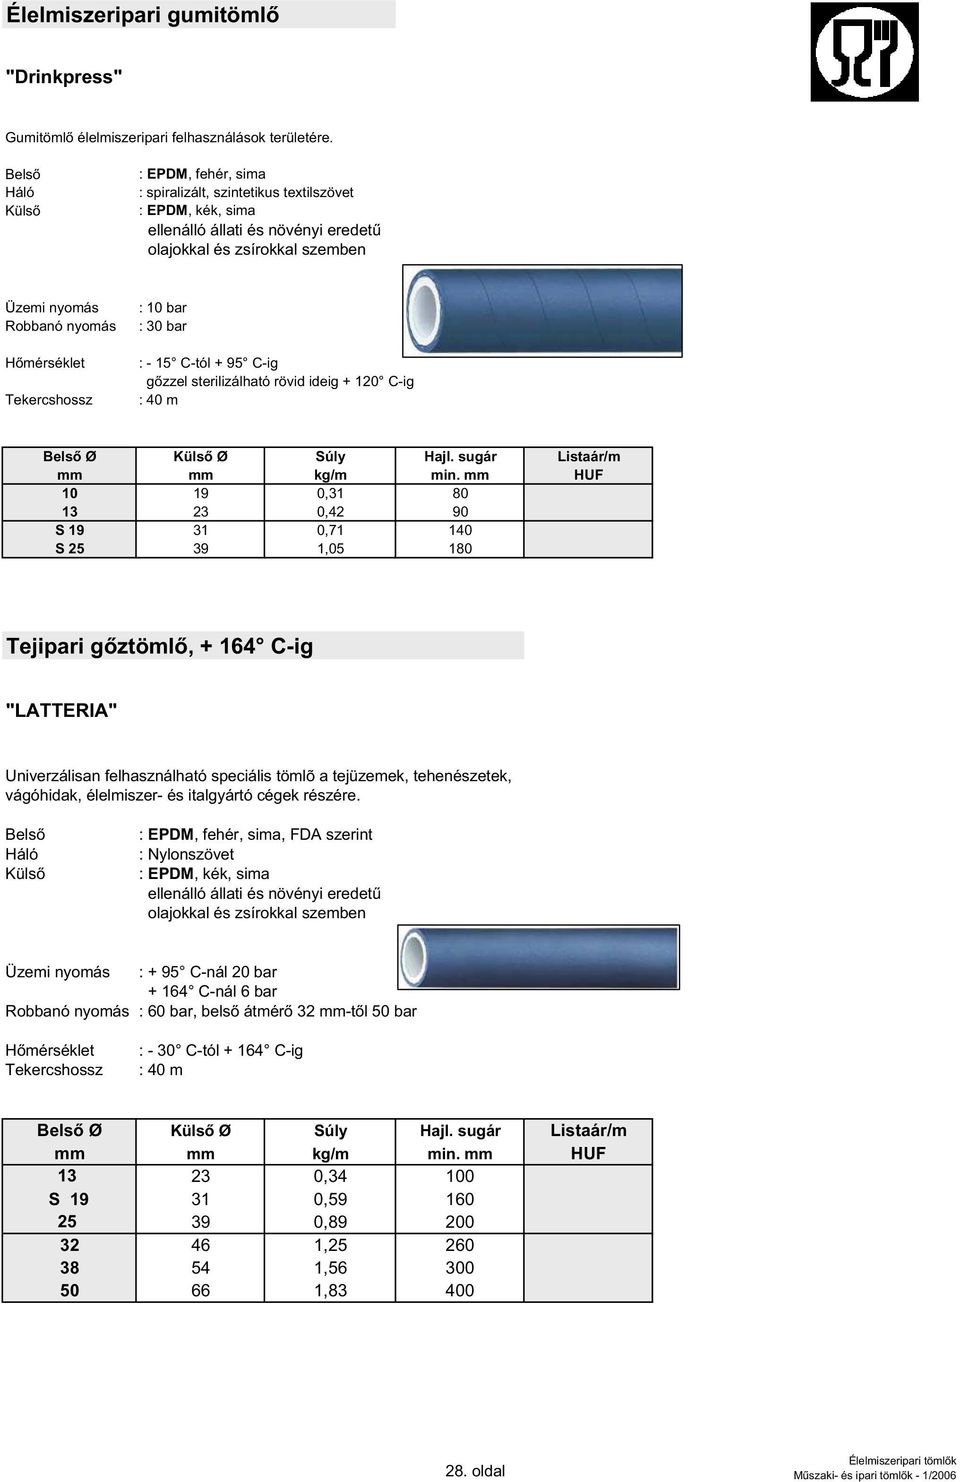 C-tól + 95 C-ig g zzel sterilizálható rövid ideig + 120 C-ig : 40 m Ø Ø Súly Hajl. sugár Listaár/m mm mm kg/m min.